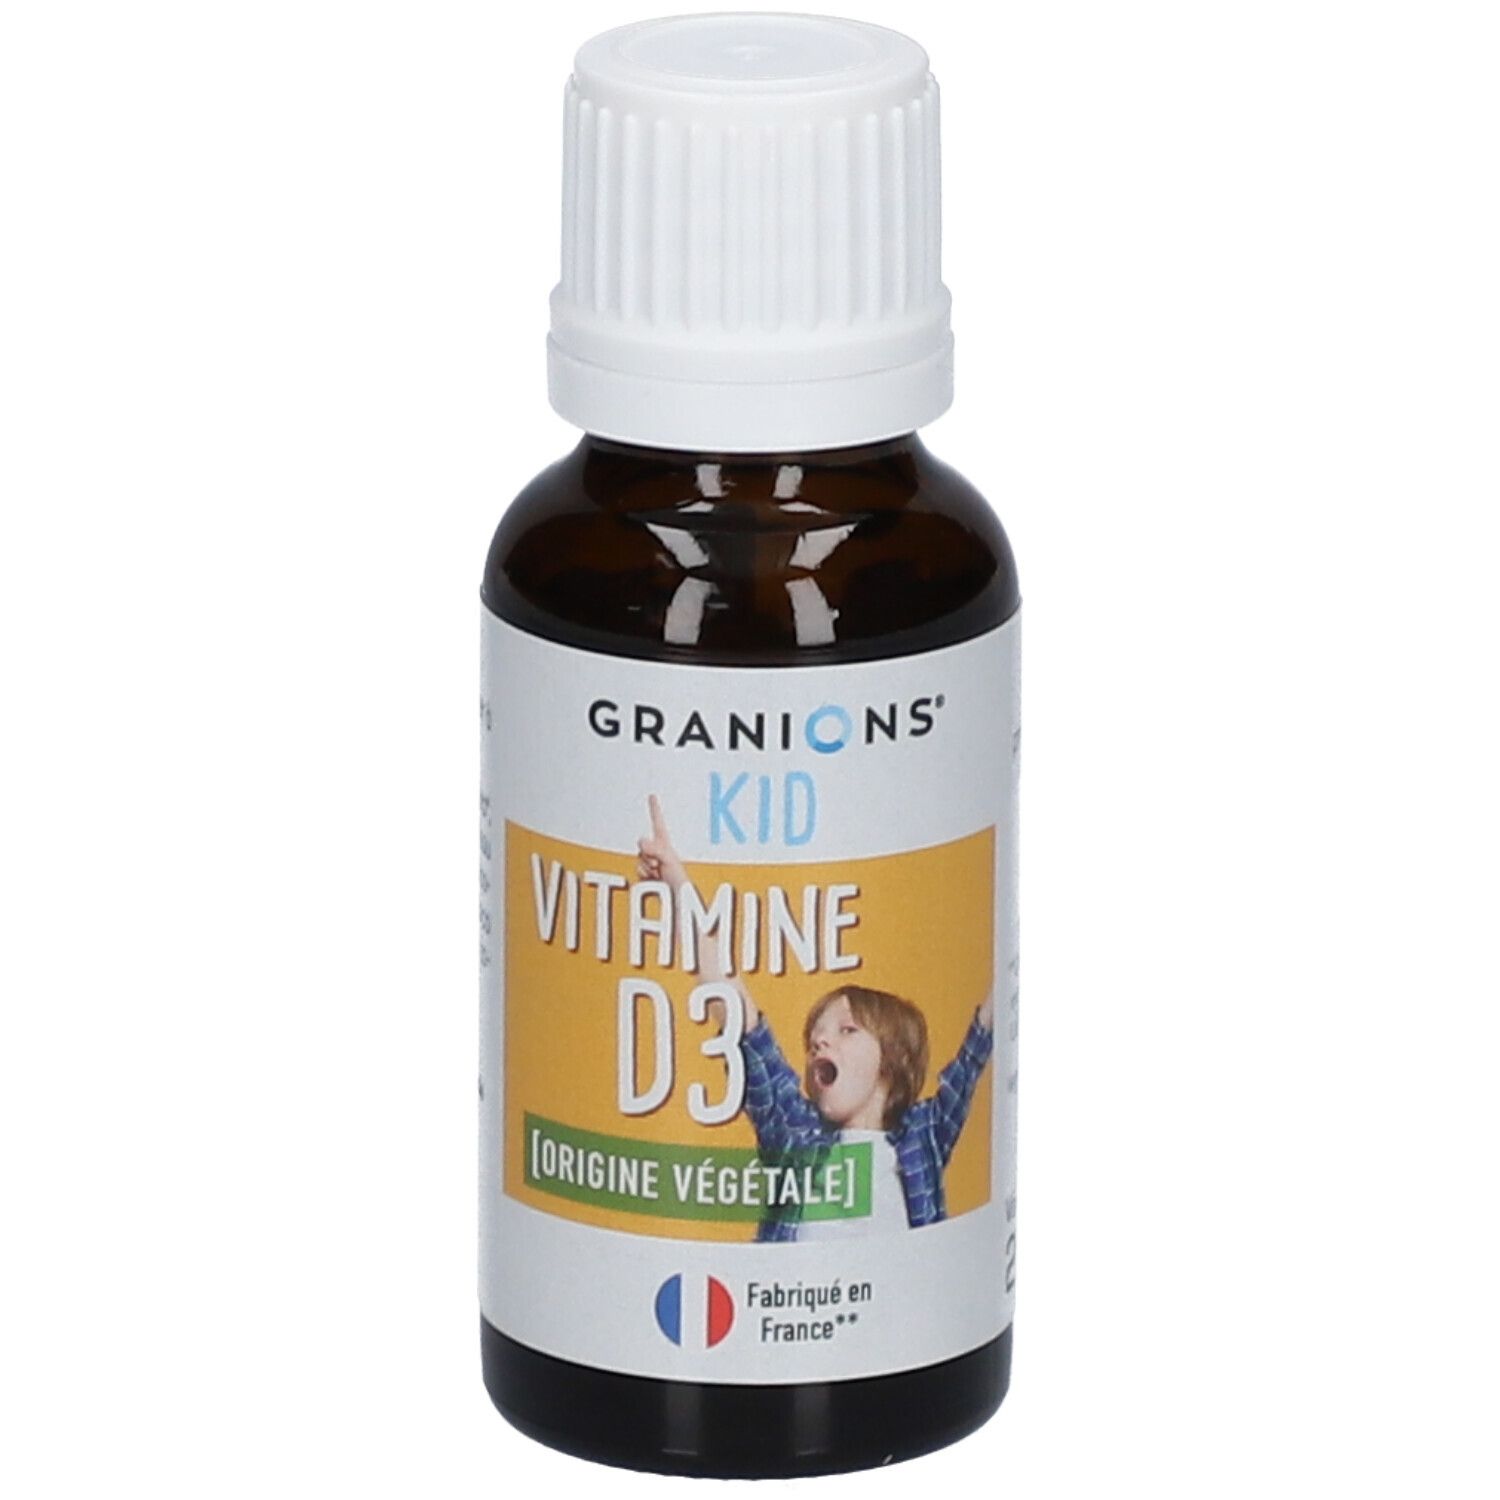 Granions® Kid Vitamine D3